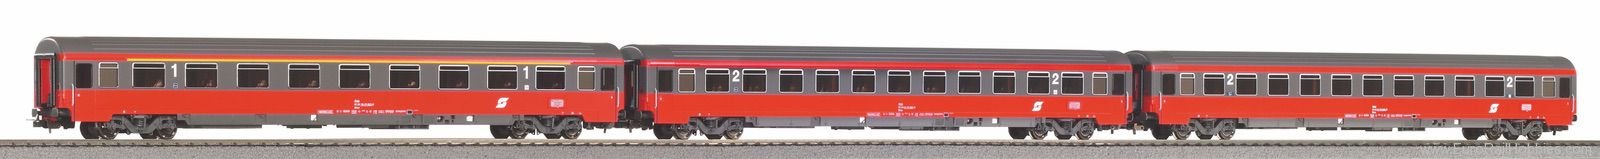 Piko 58225 3-Piece Express Coach Eurofima 1x 1. Class + 